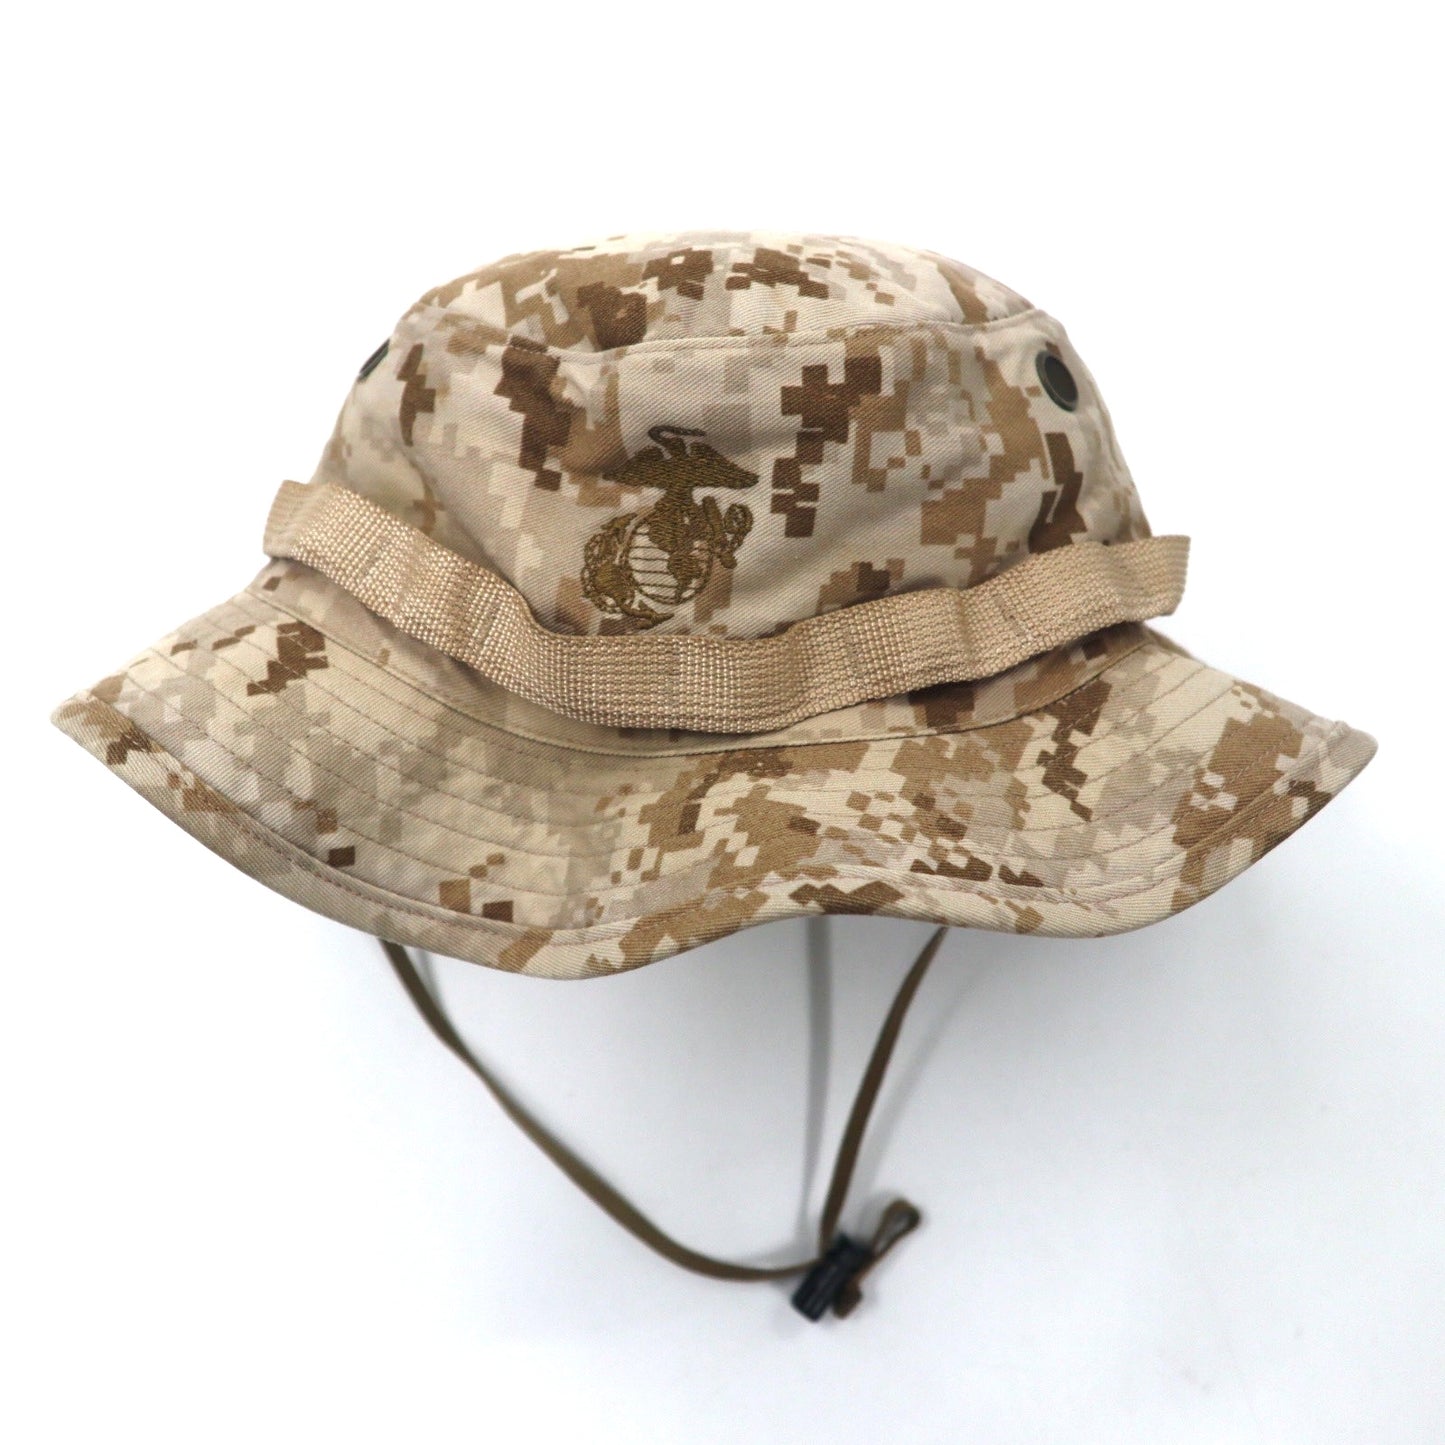 USGI 米軍 ジャングルハット サファリハット L ベージュ デジカモ コットン Marine Corps USMC Field Cover Boonie Hat ミリタリー 8415-01-485-8142 SEKIRI INDUSTRIES,INC